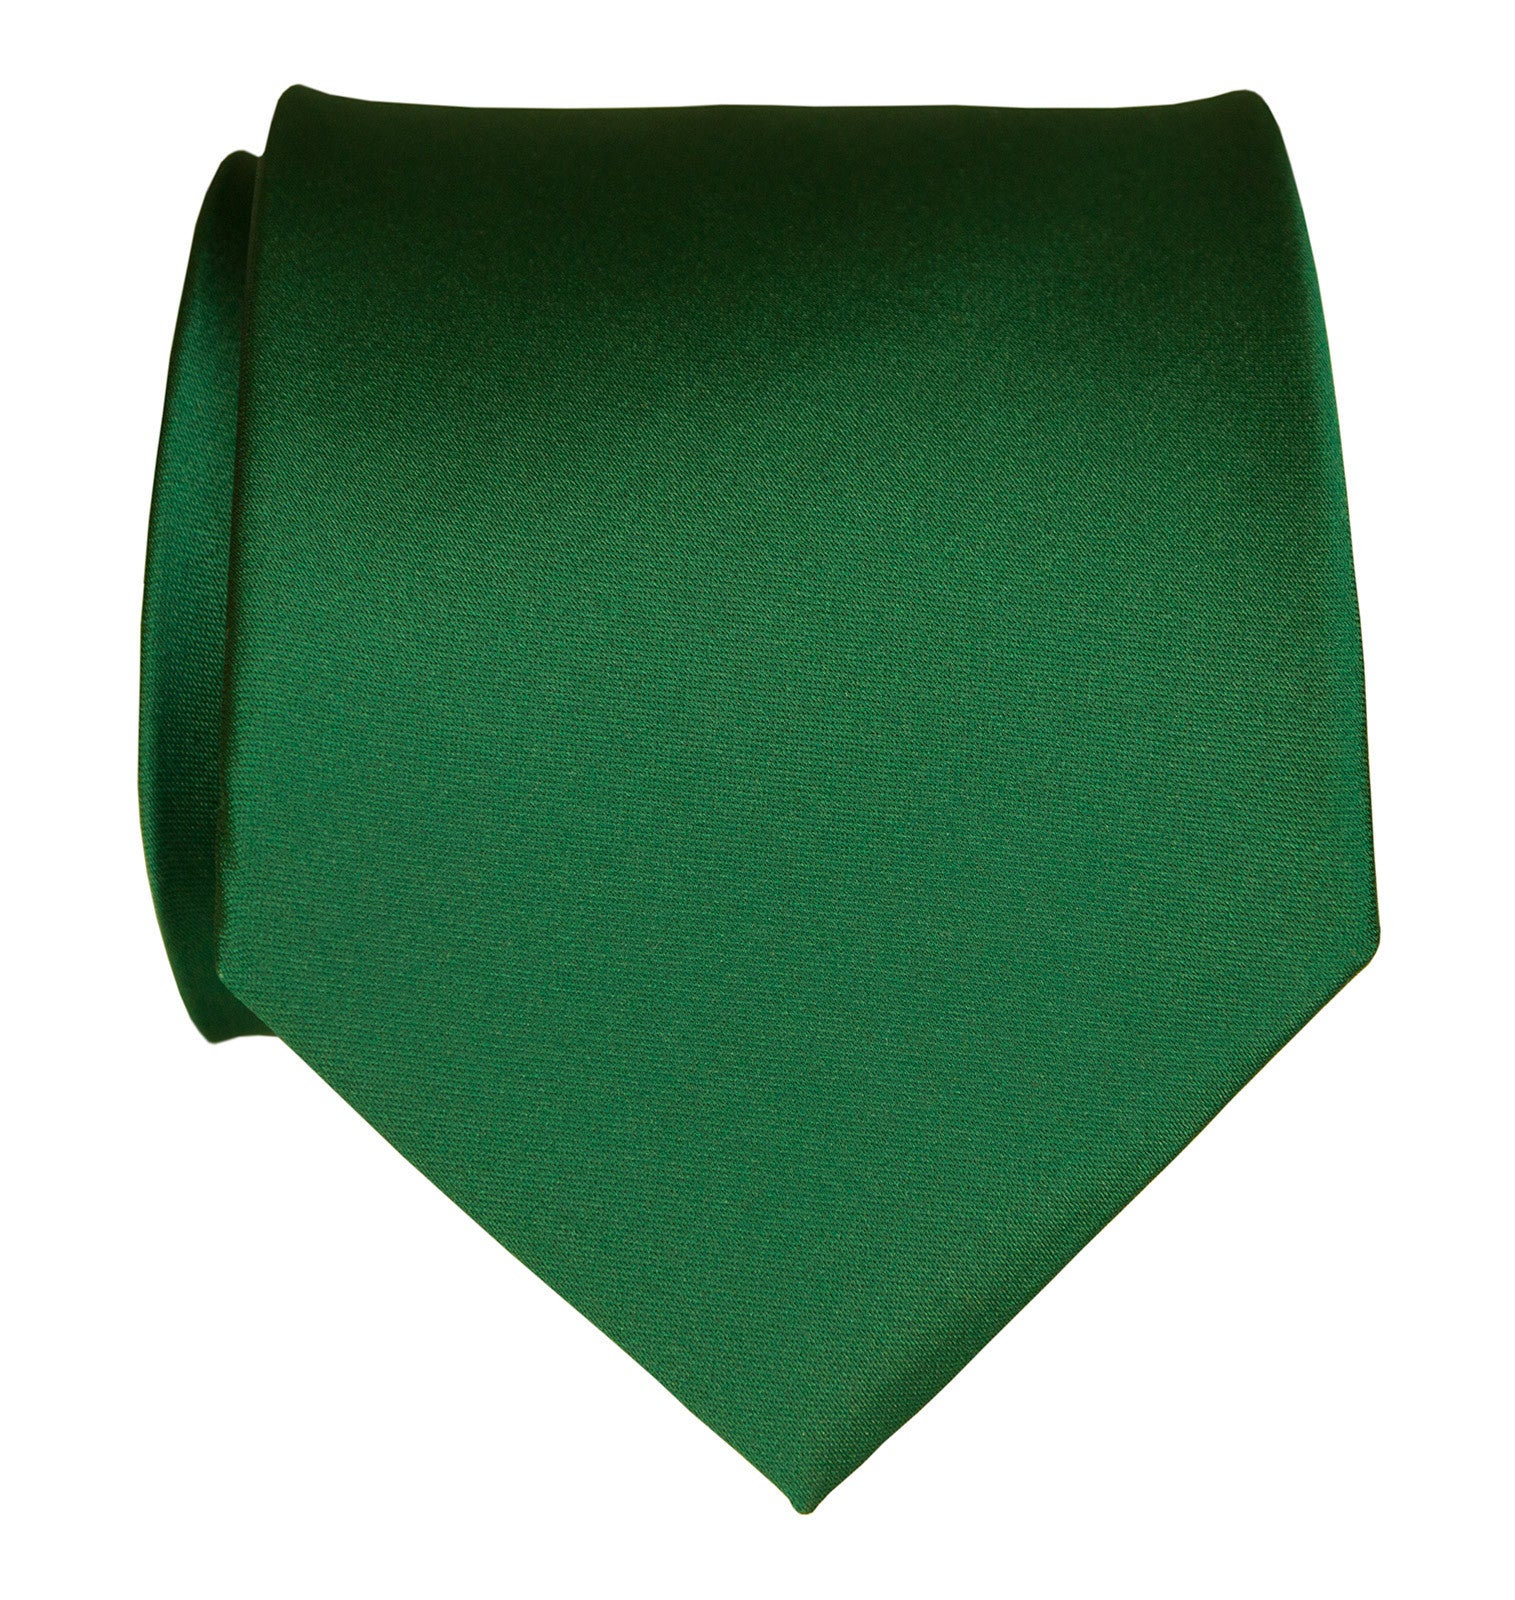 Emerald Green Necktie Dark Green Solid Color Satin Finish Tie No Print